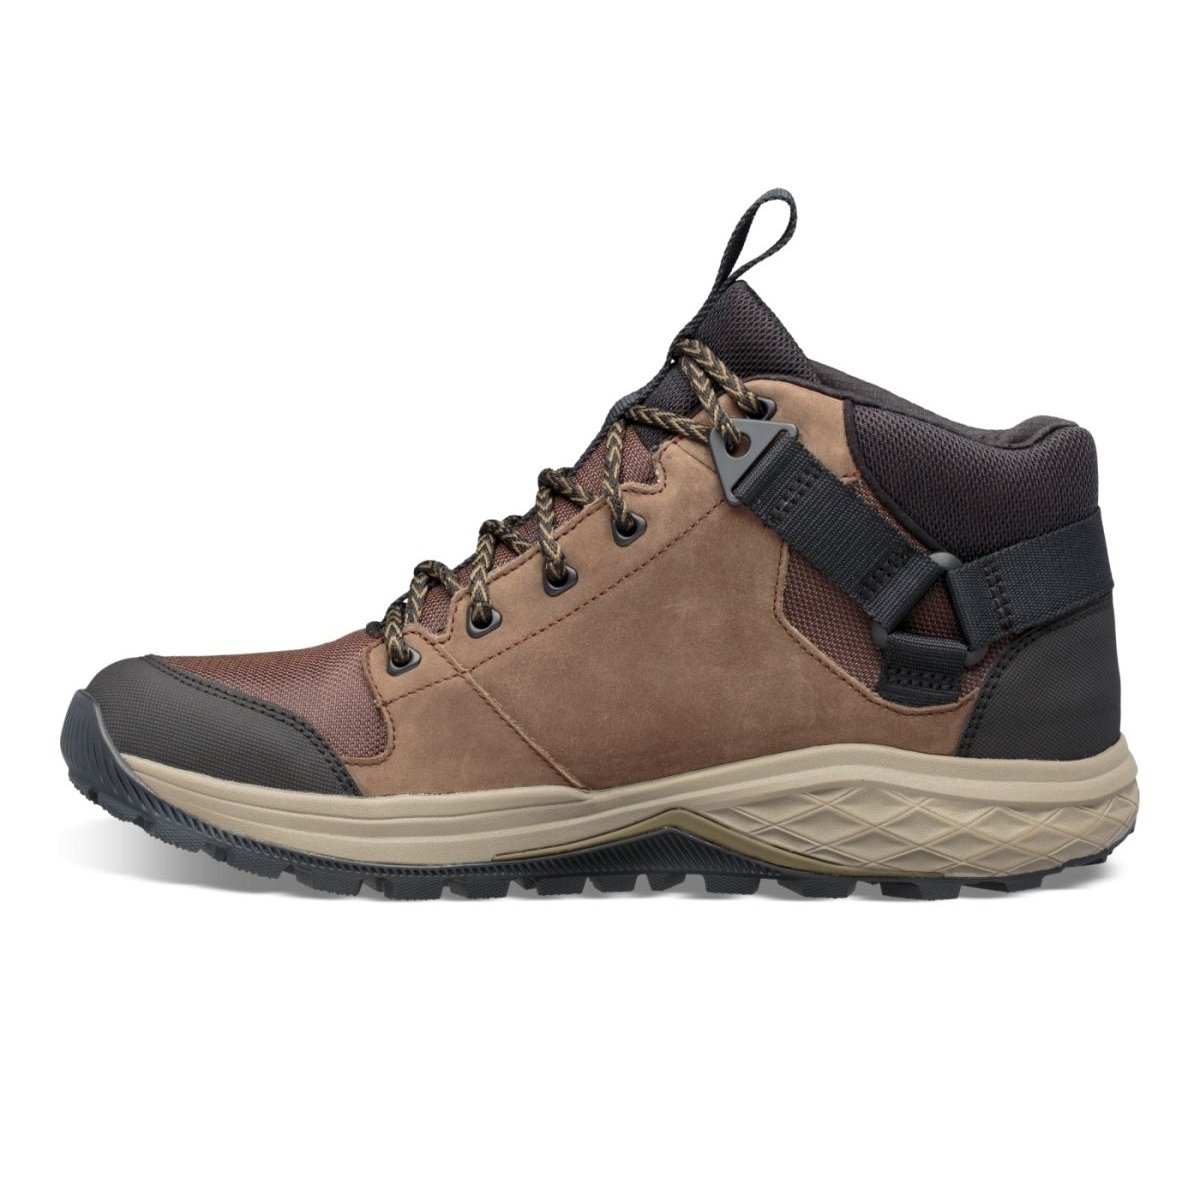 Teva Men's Grandview Mid Gore-Tex Hiking Shoe Chocolate Chip - 1106804-CCHP CHOCOLATE CHIP - CHOCOLATE CHIP, 11.5